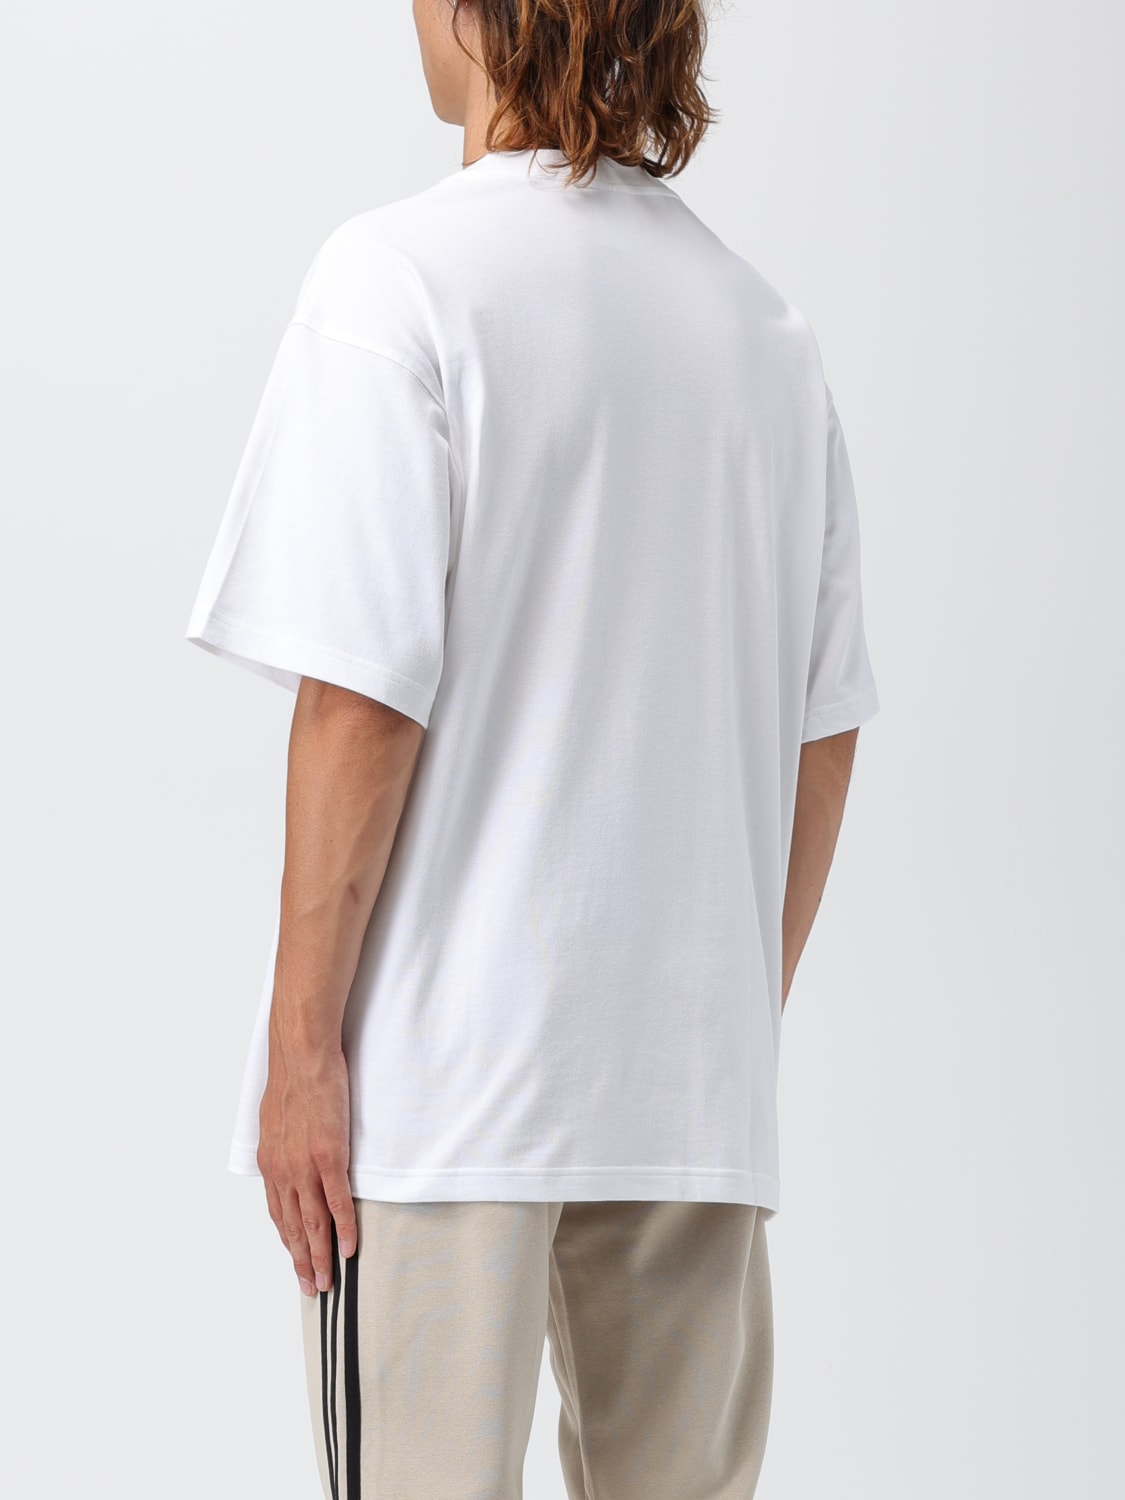 ADIDAS ORIGINALS: cotton t-shirt with logo - White | Adidas Originals t- shirt IM4388 online at